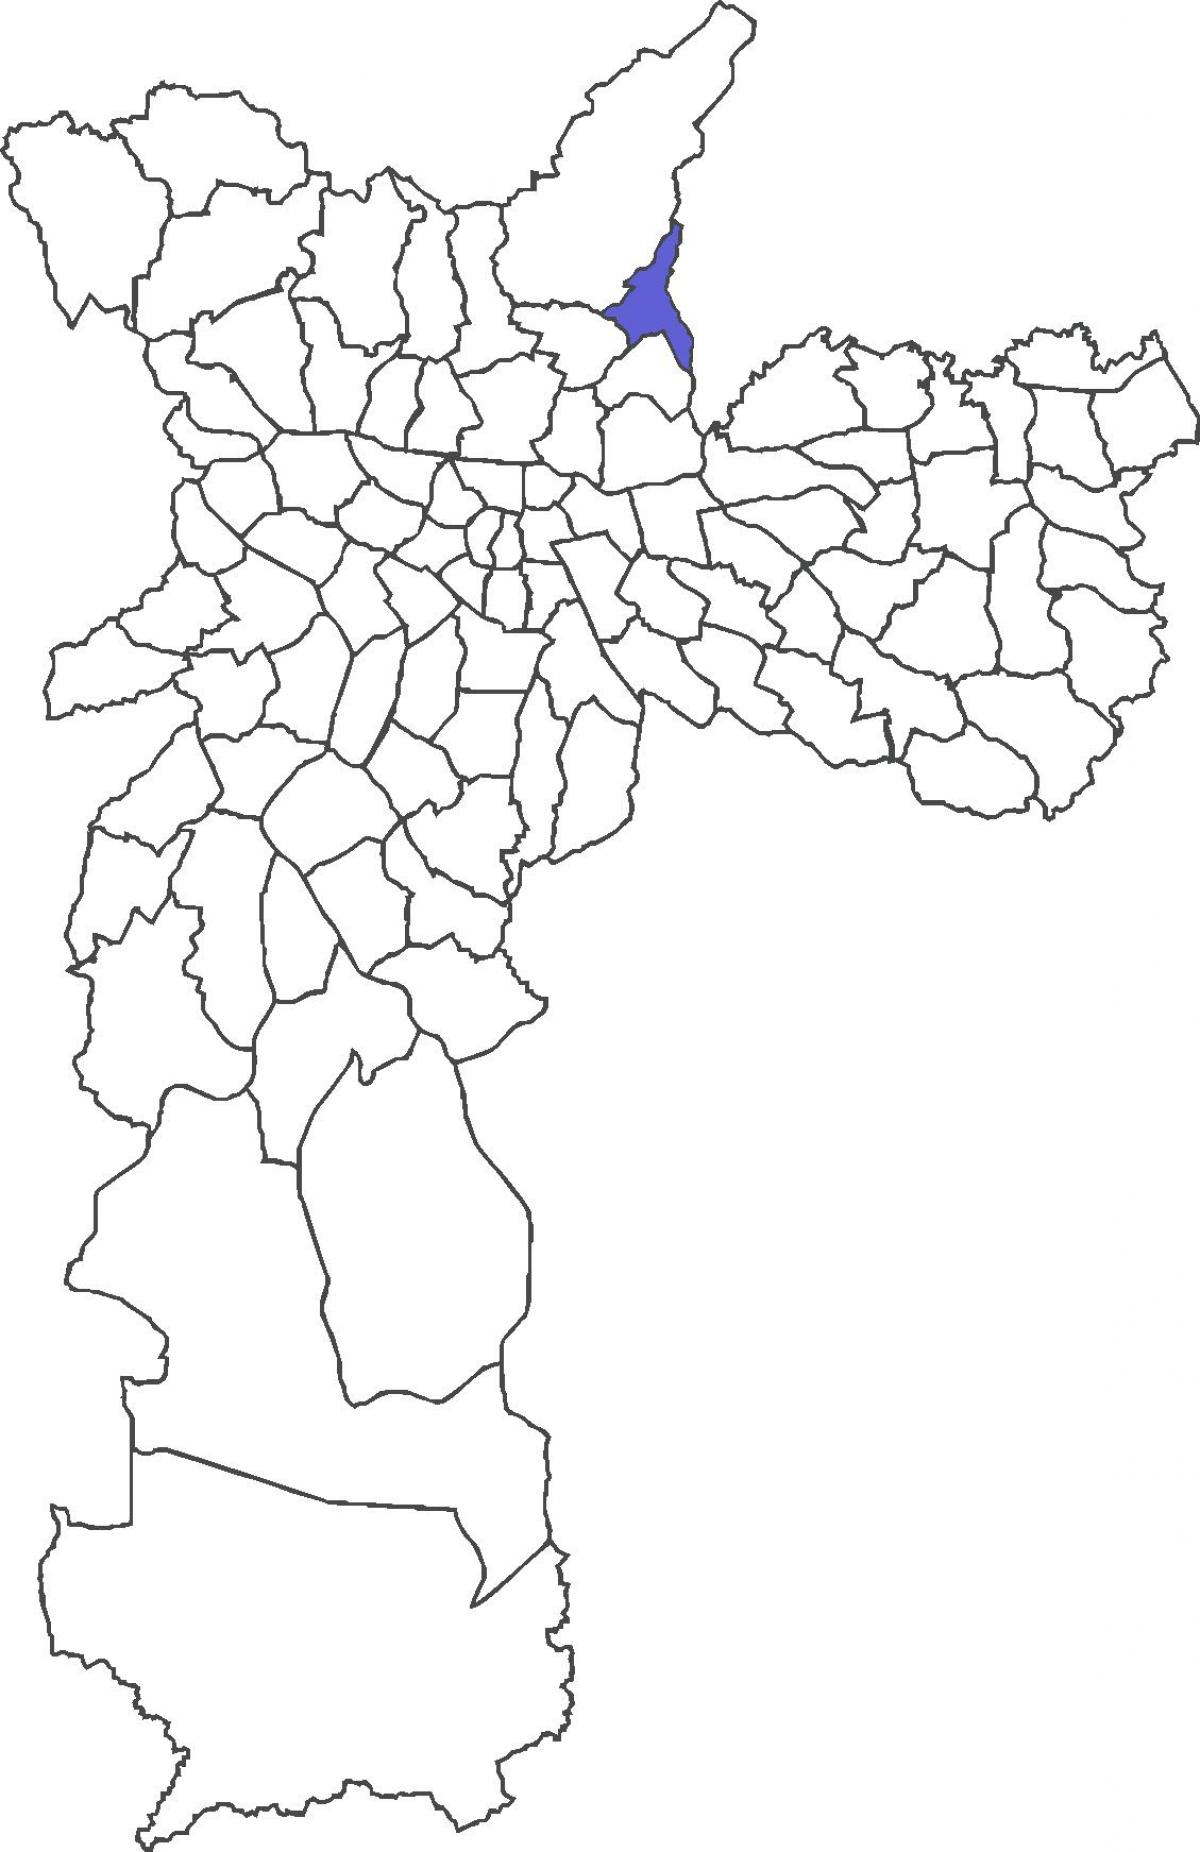 Jaçanã bölge haritası